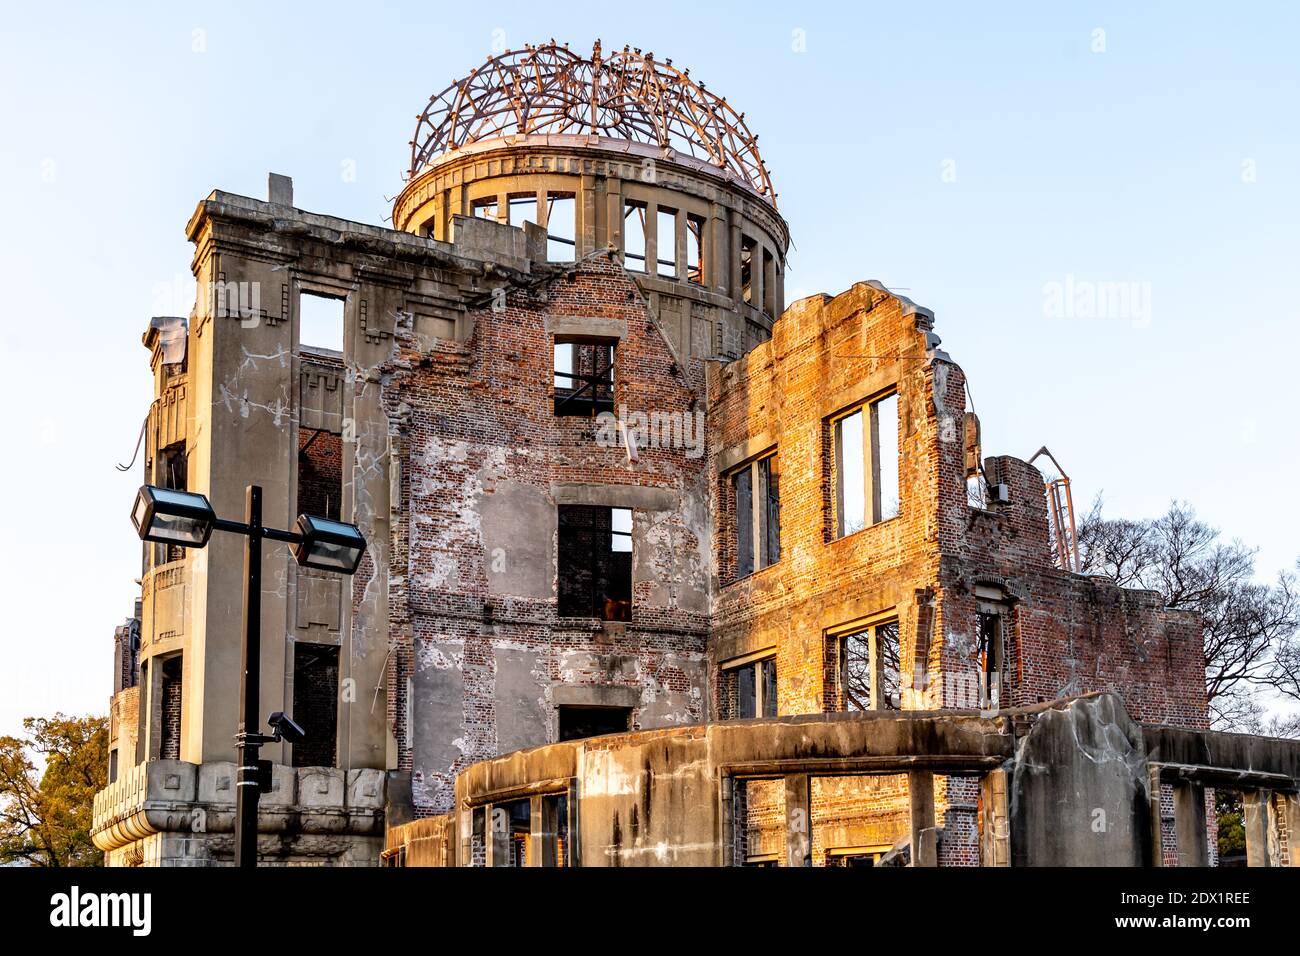 La cupola della bomba atomica al tramonto, parte del Parco commemorativo della Pace di Hiroshima, Giappone, è stata dichiarata Patrimonio dell'Umanità dall'UNESCO. Foto Stock